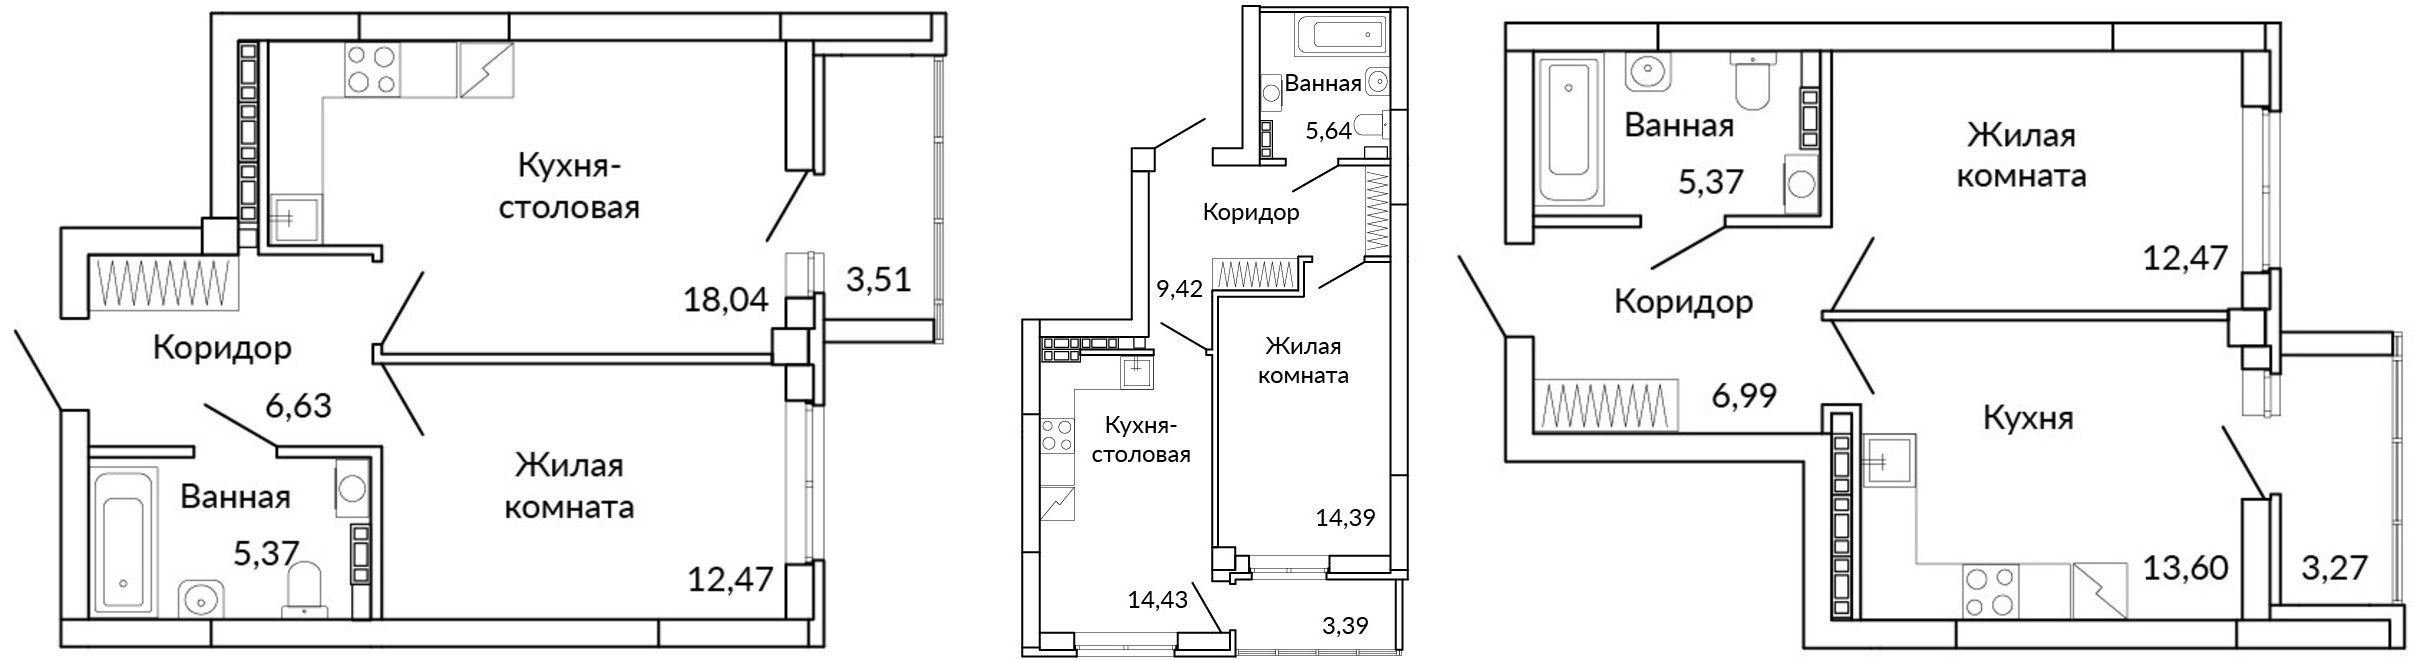 Варианты планировок однокомнатных квартир в классическом исполнении и в евроформате